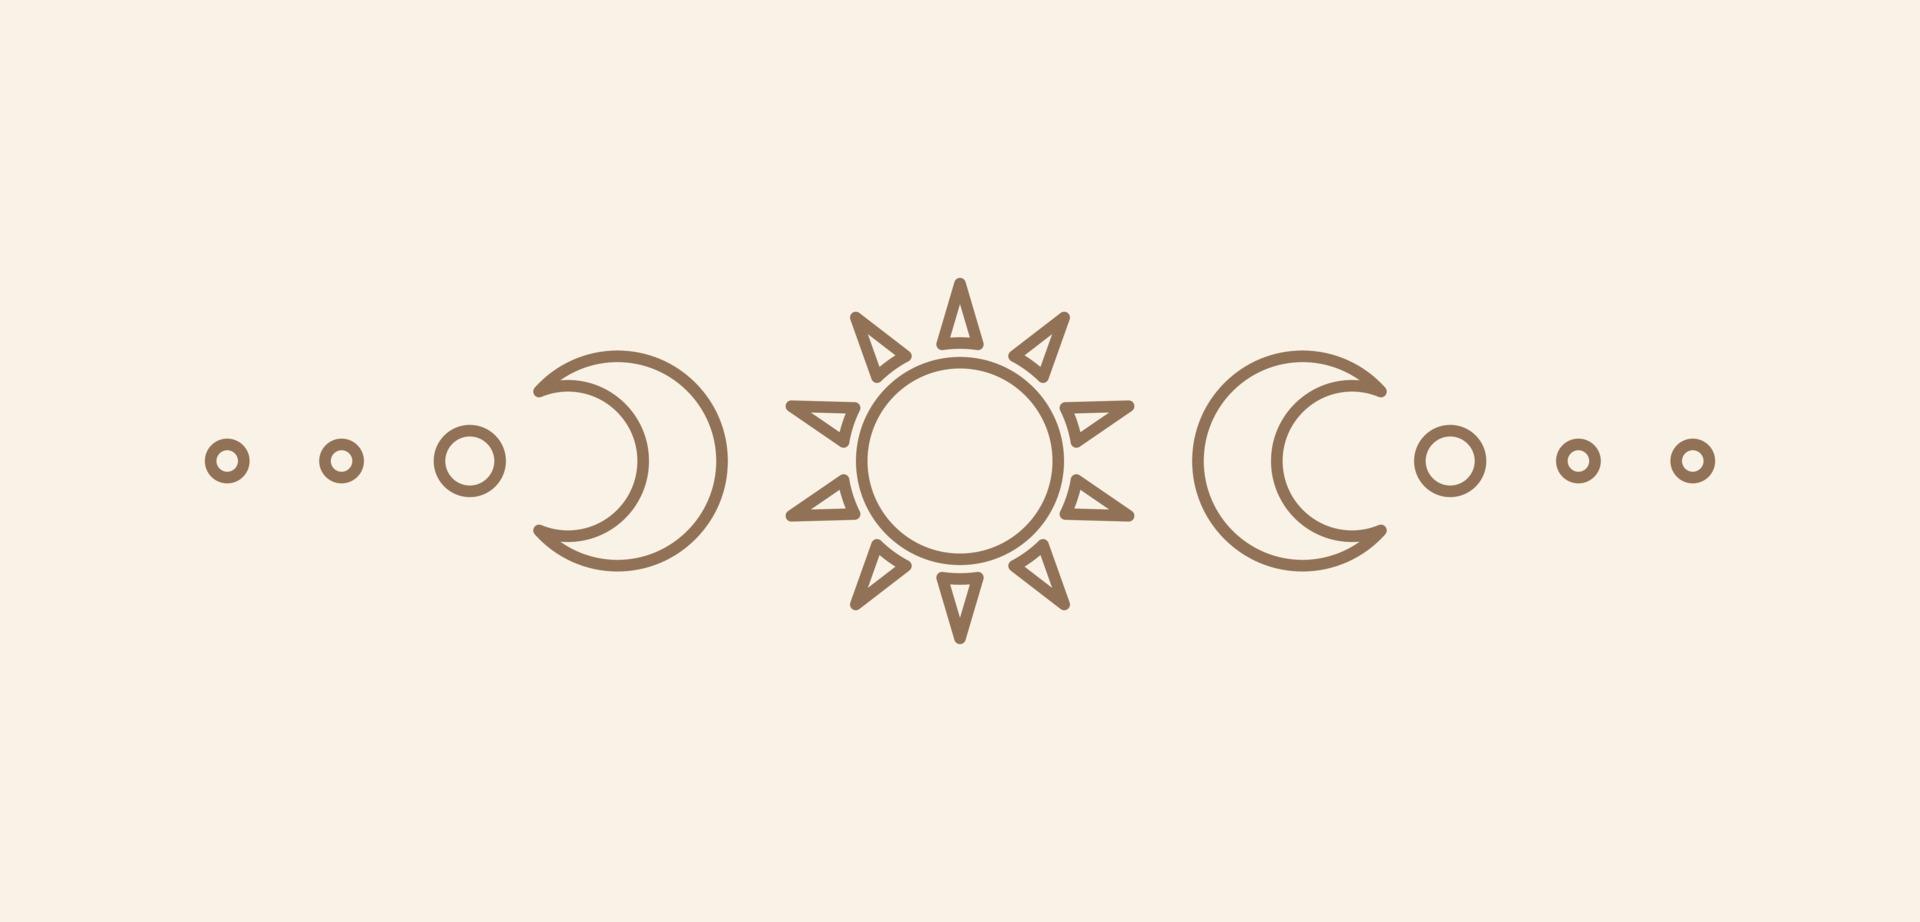 céleste texte diviseur avec soleil, étoiles, lune phases, croissants. fleuri boho mystique séparateur décoratif élément vecteur